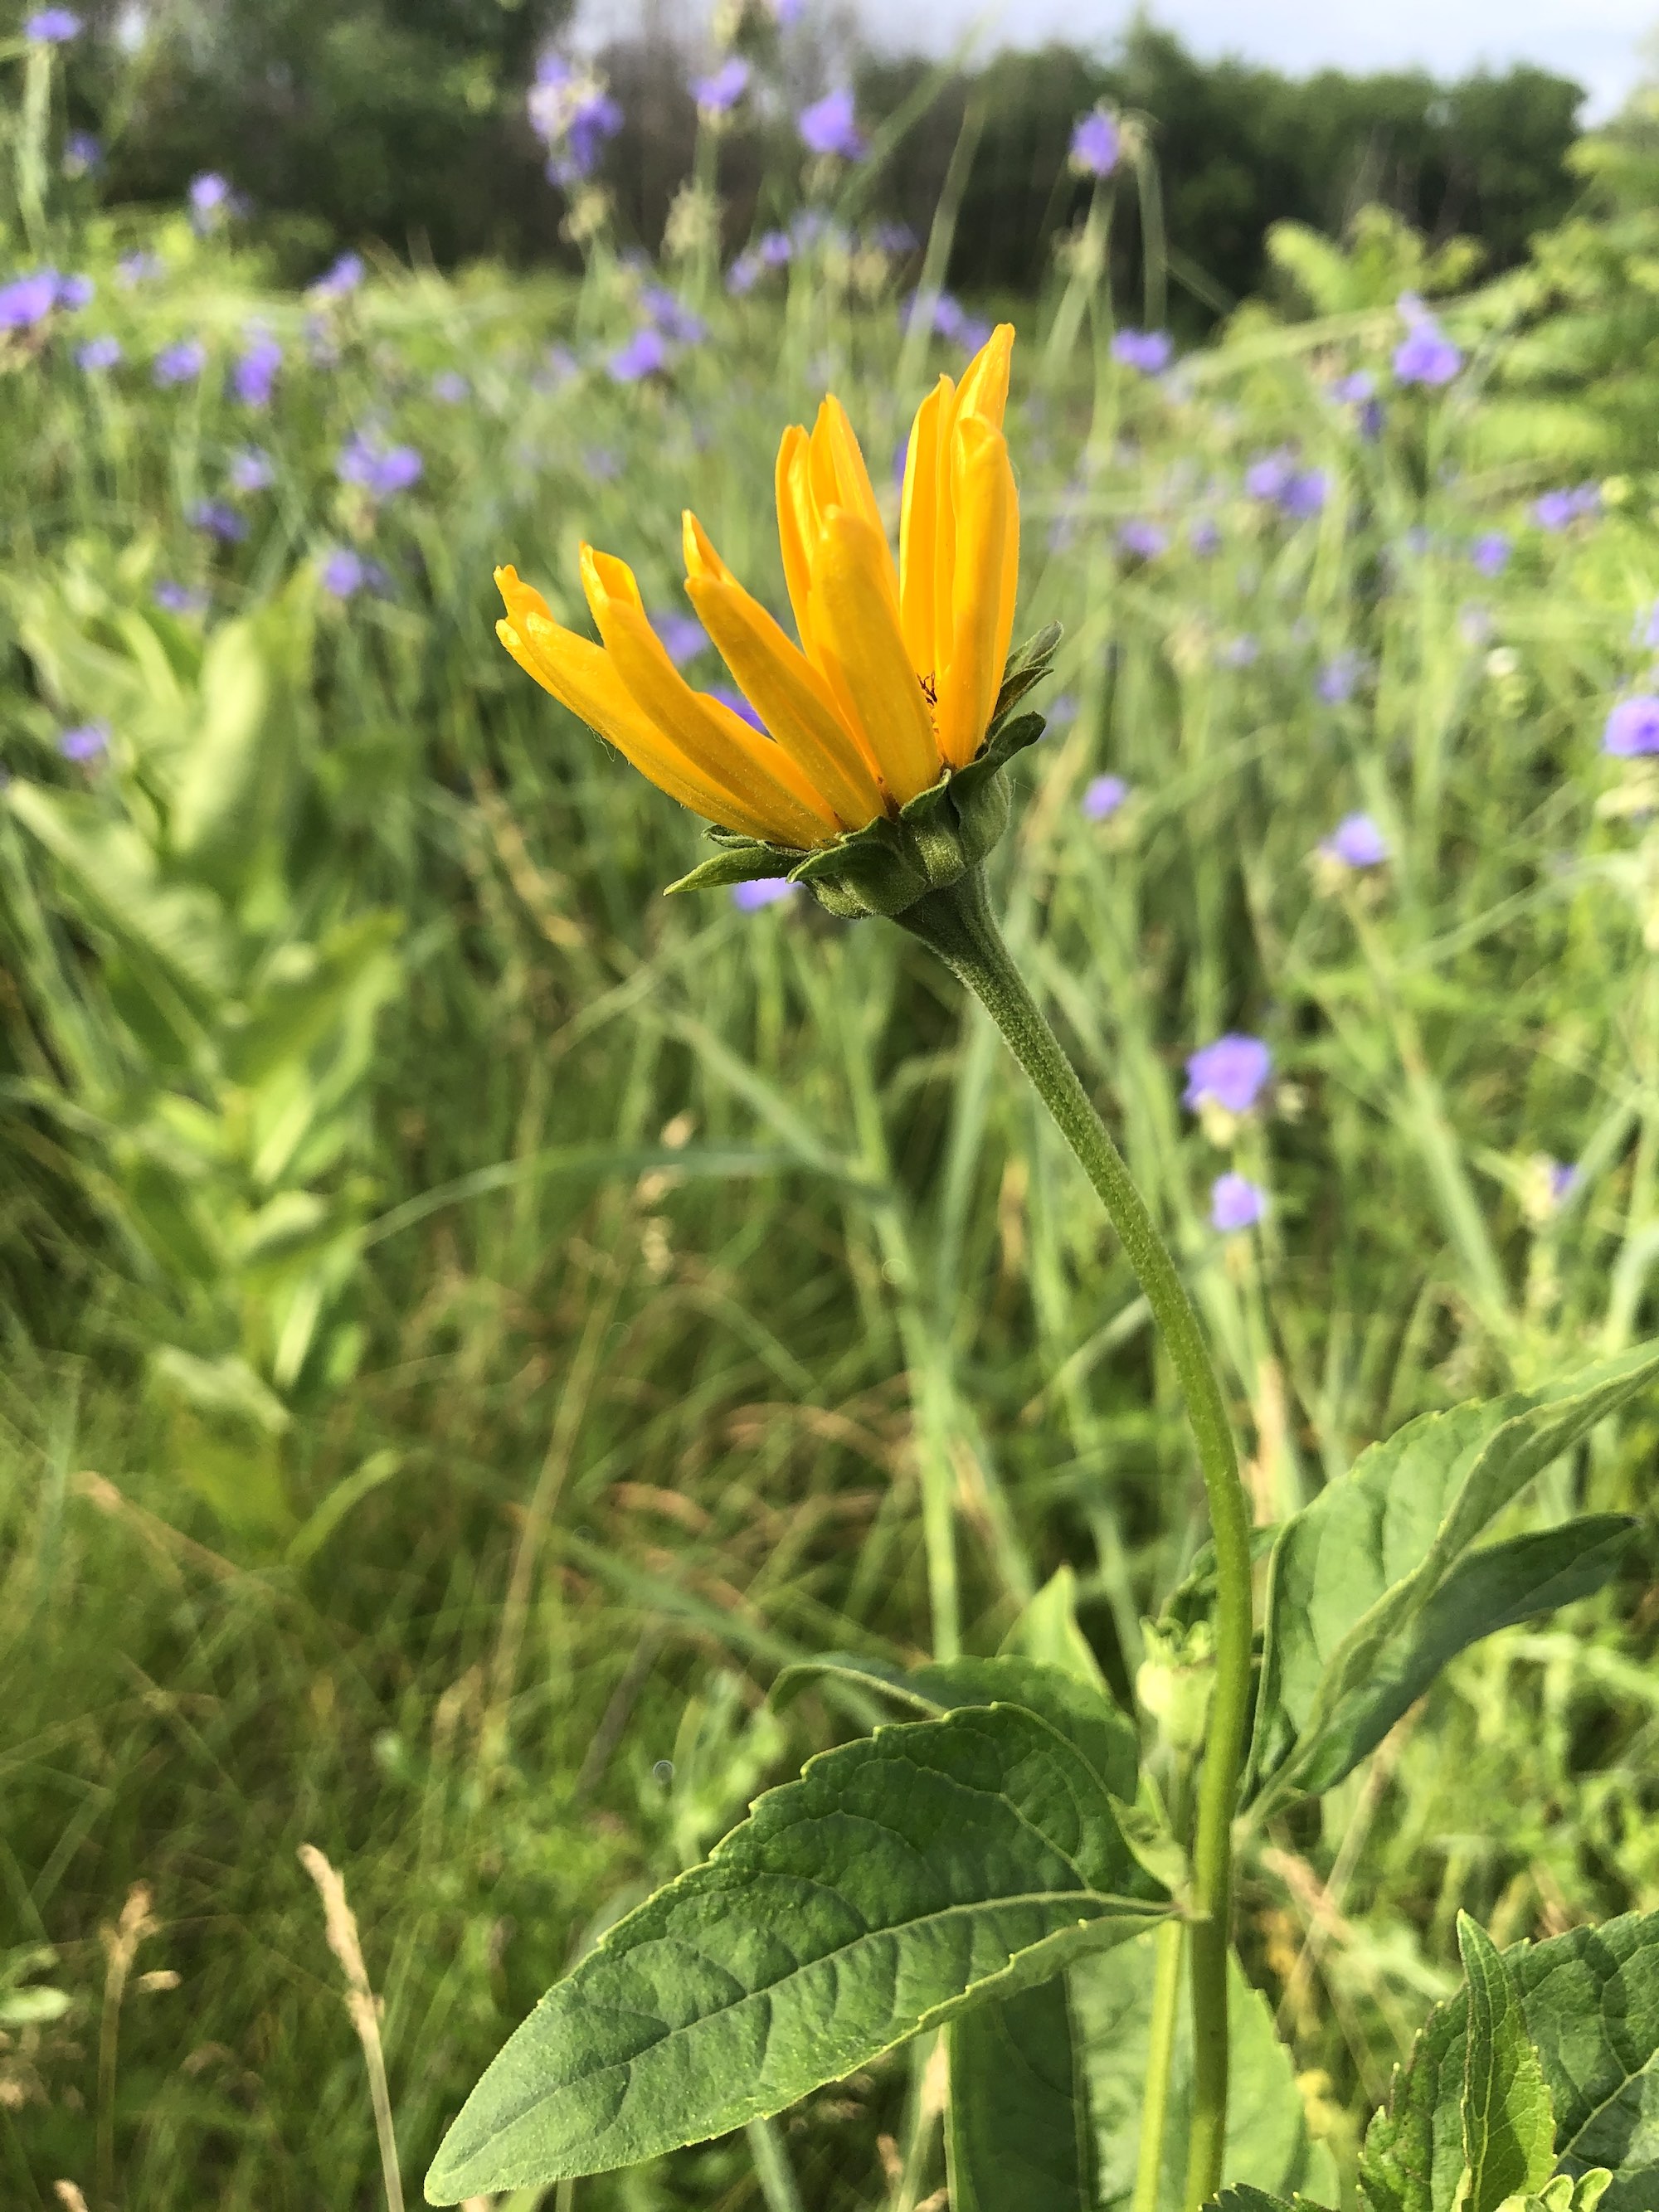 False Sunflower on shore of Marion Dunn pond in Madison, Wisconsin on June 19, 2020.